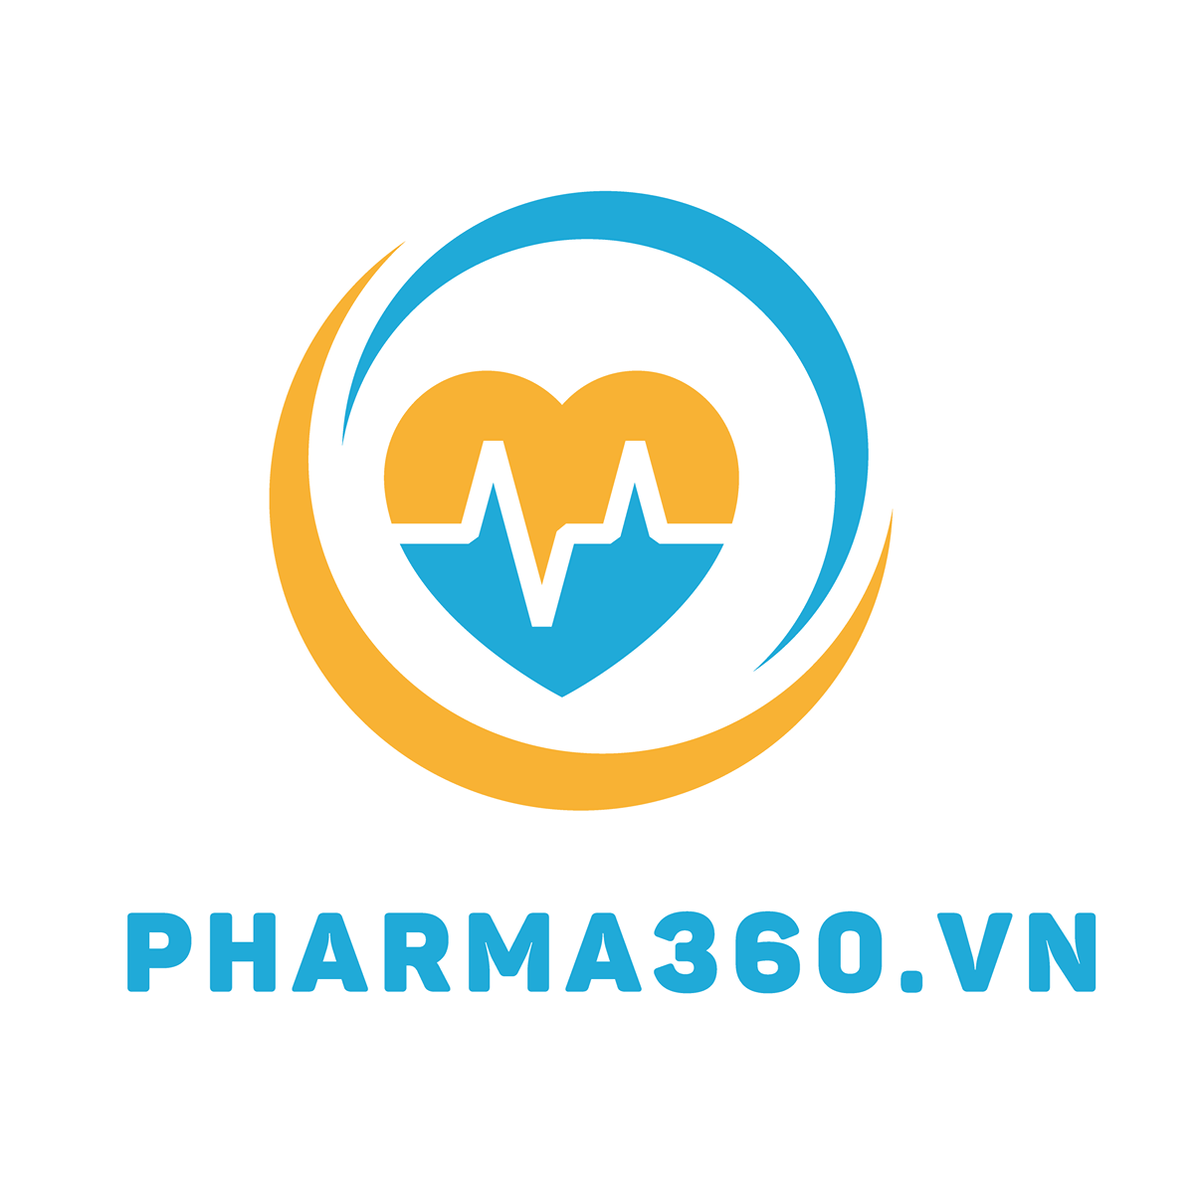 Lowongan STARMED CẦN TUYỂN GẤP QUẢN LÝ NHÃN HÀNG (Thu Nhập 15 - 20 Triệu) di Công ty cổ phần dịch vụ và công nghệ Pharma360, Hà Nội | Glints